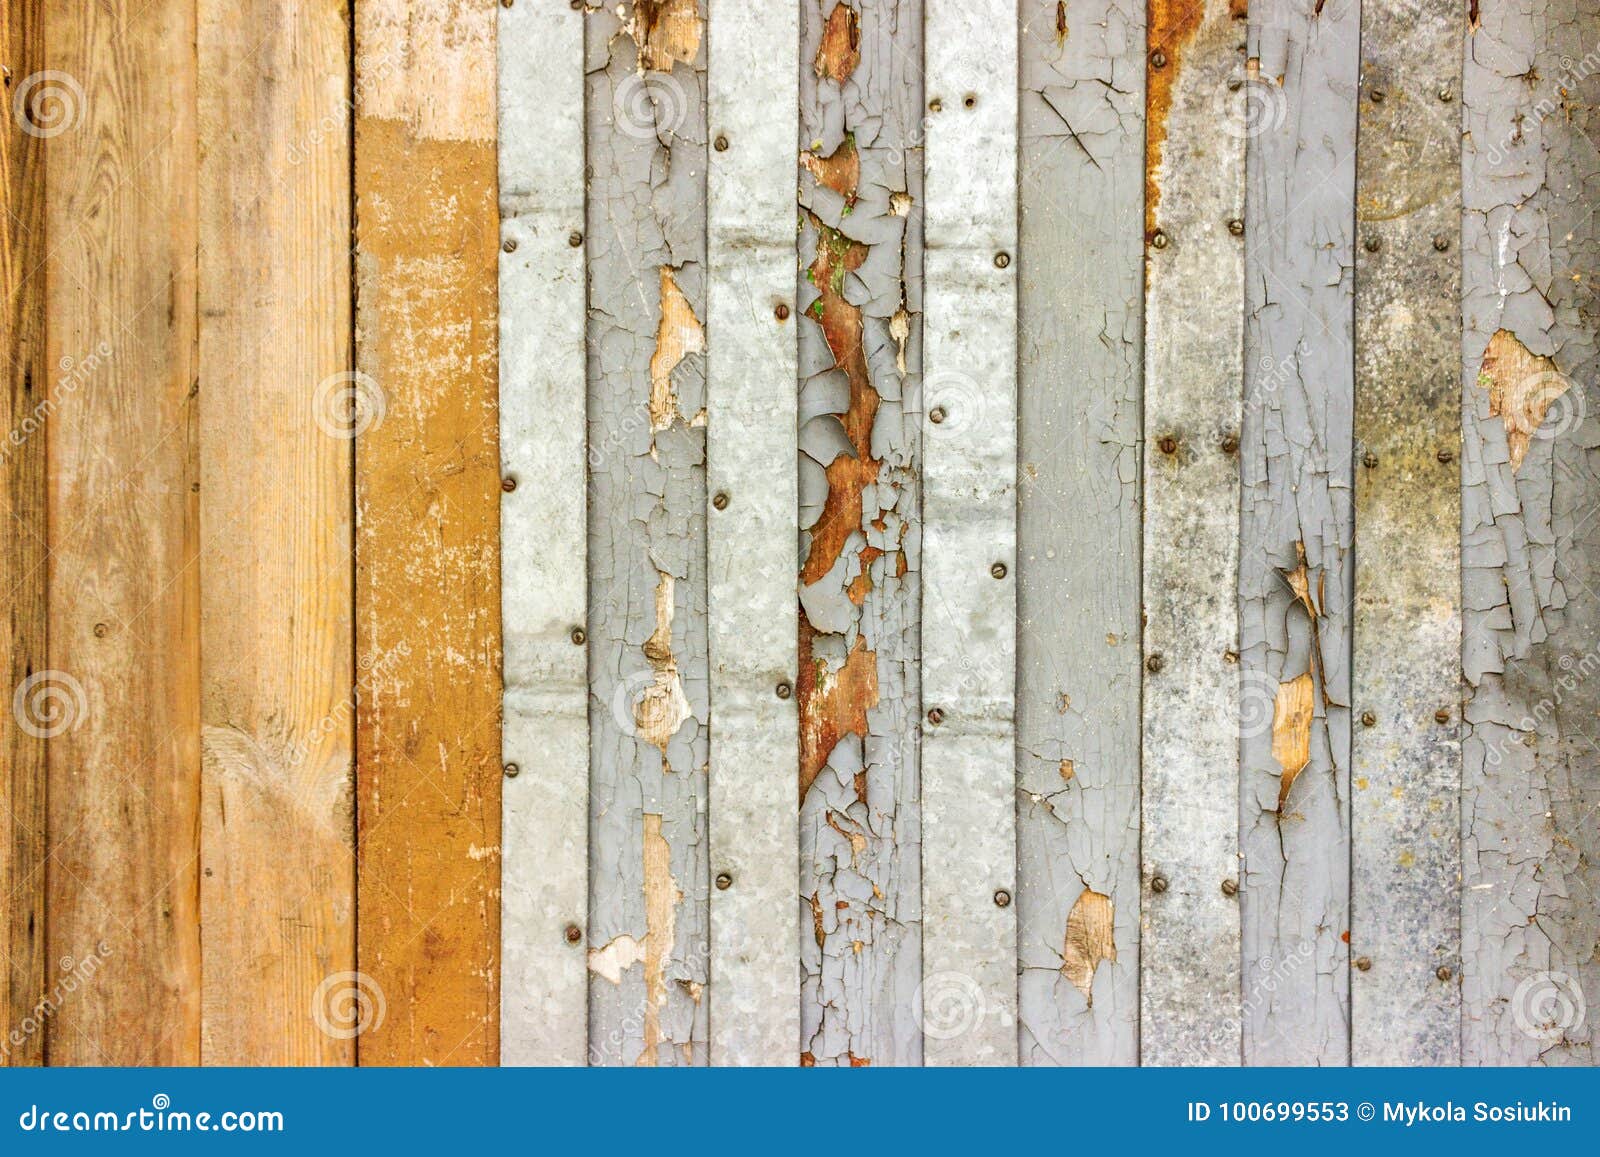 葡萄酒白涂料绘了土气老木破旧的板条墙壁被构造的背景退色的自然木委员会盘区结构库存图片 图片包括有退色的自然木委员会盘区结构 葡萄酒白涂料 绘了土气老木破旧的板条墙壁被构造的背景